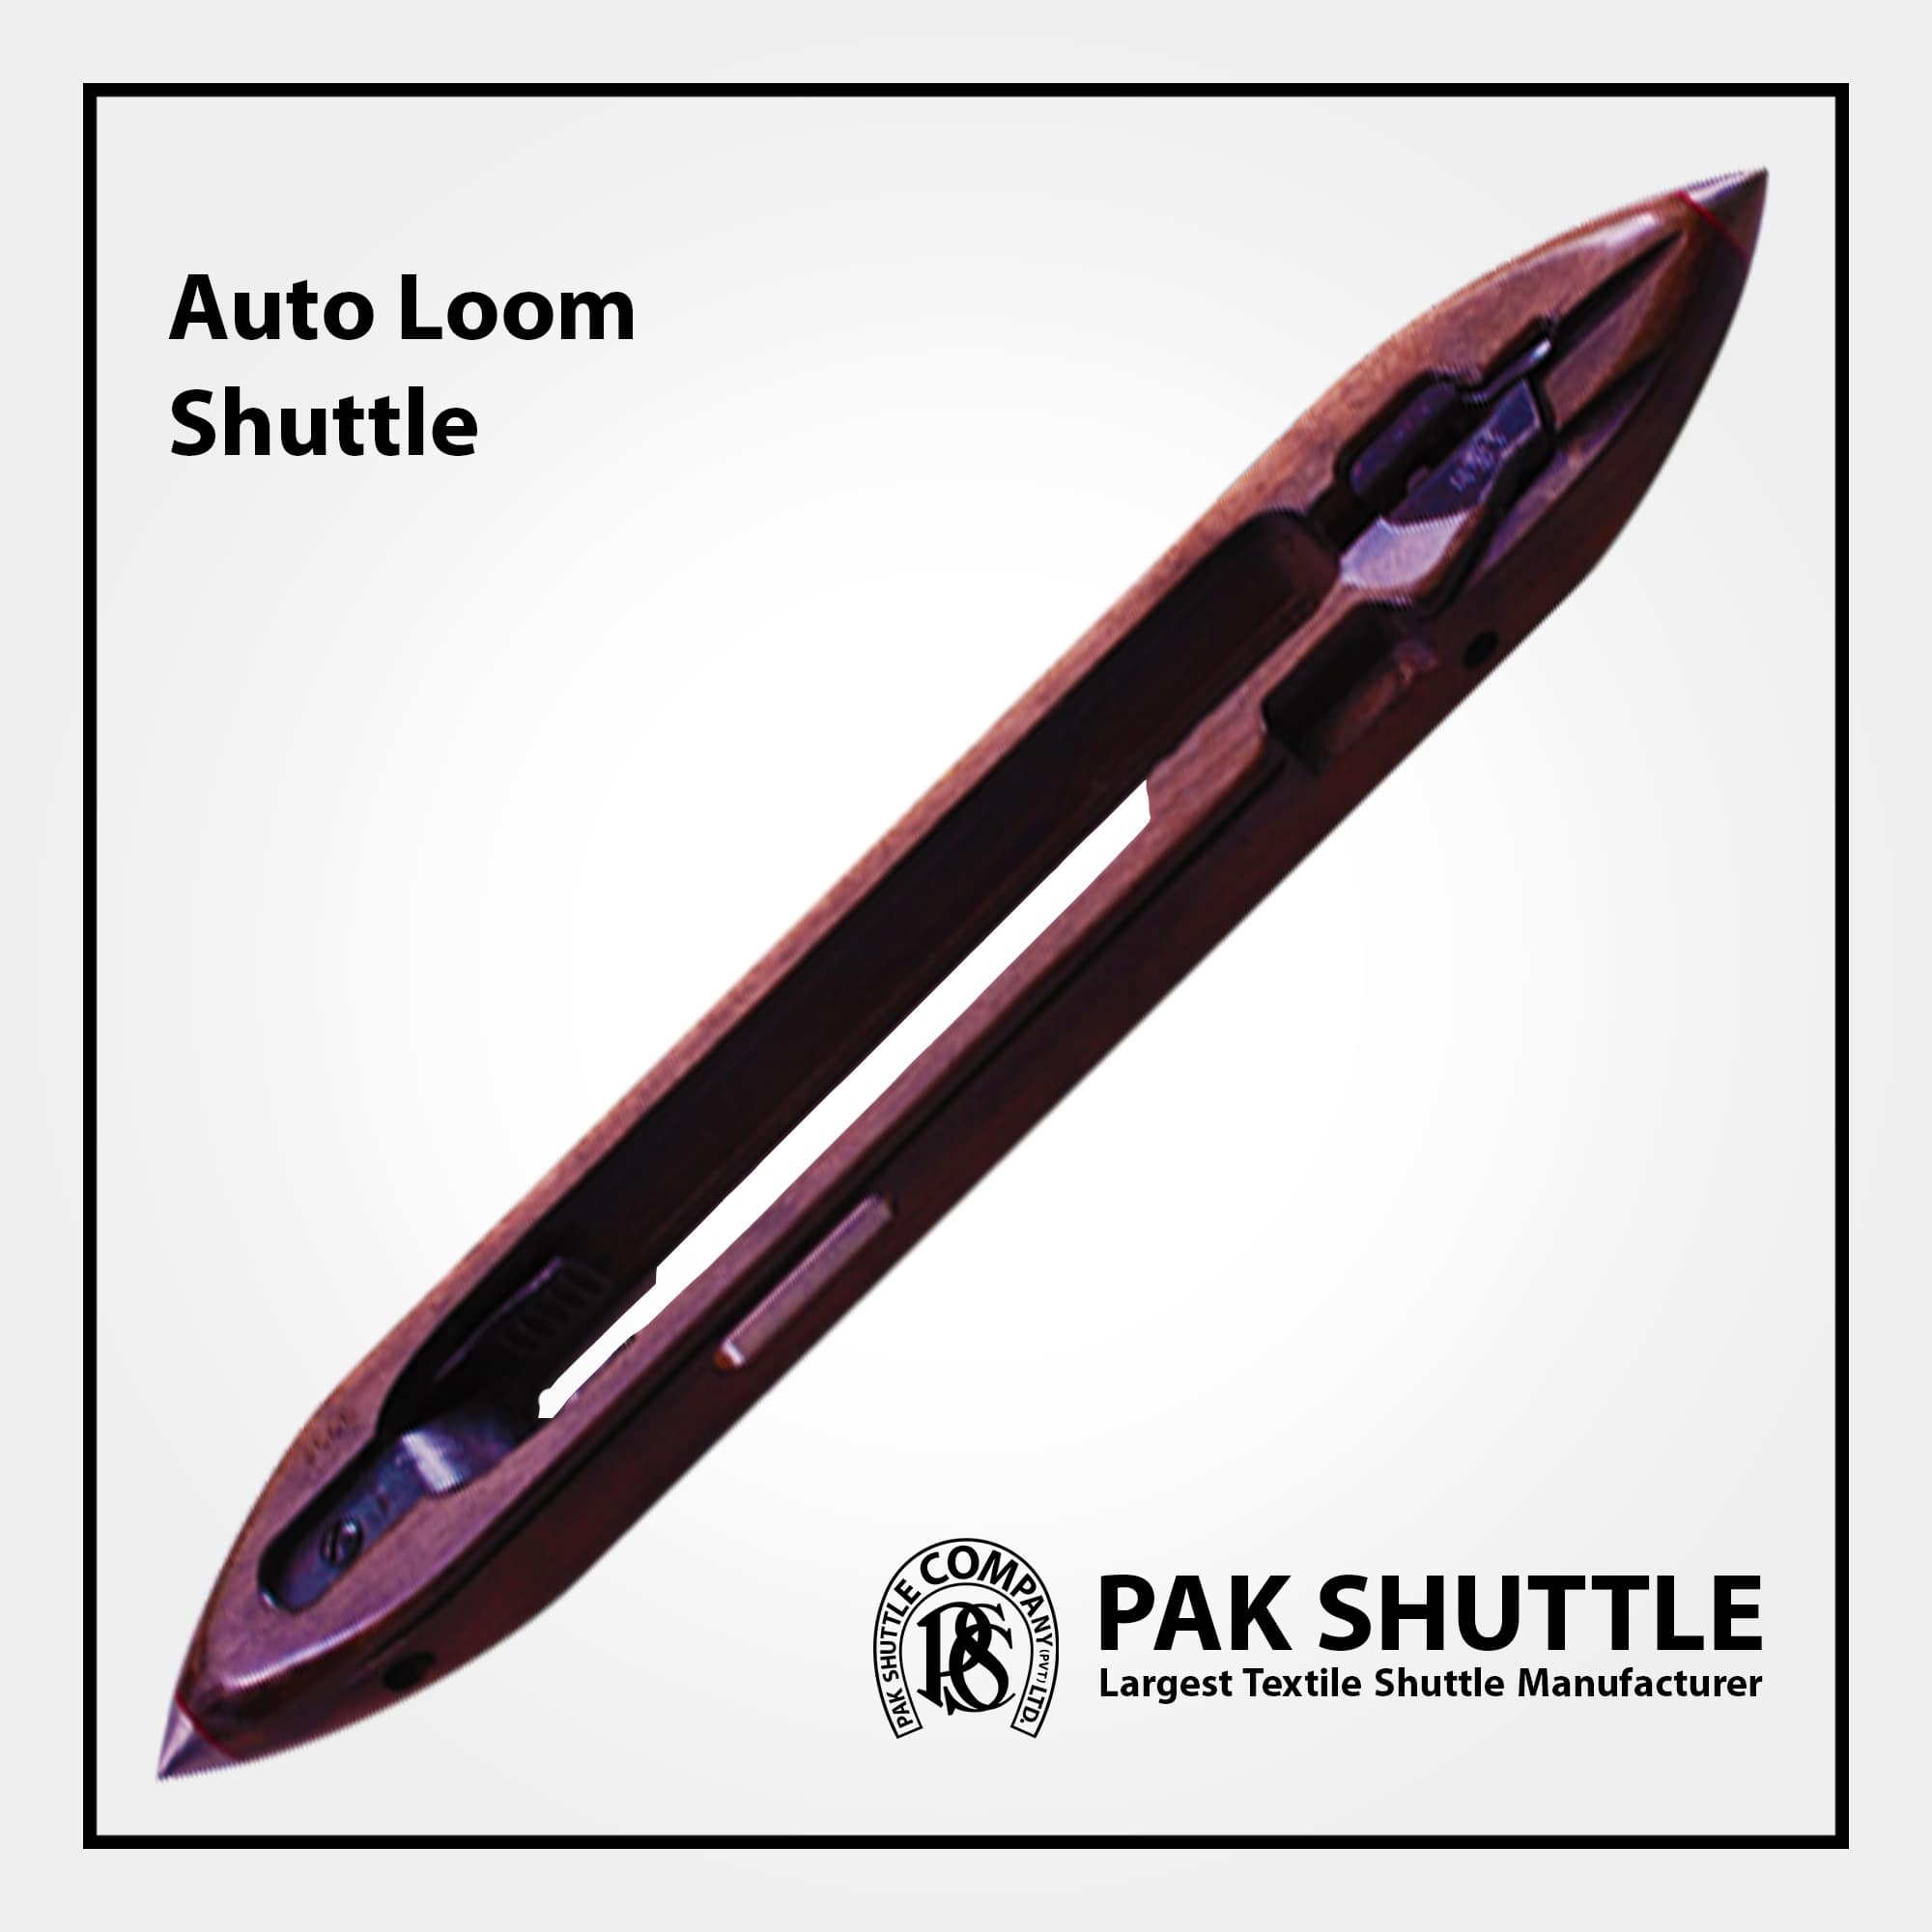 Auto Loom Shuttle by Pak Shuttle Company Pvt Ltd.